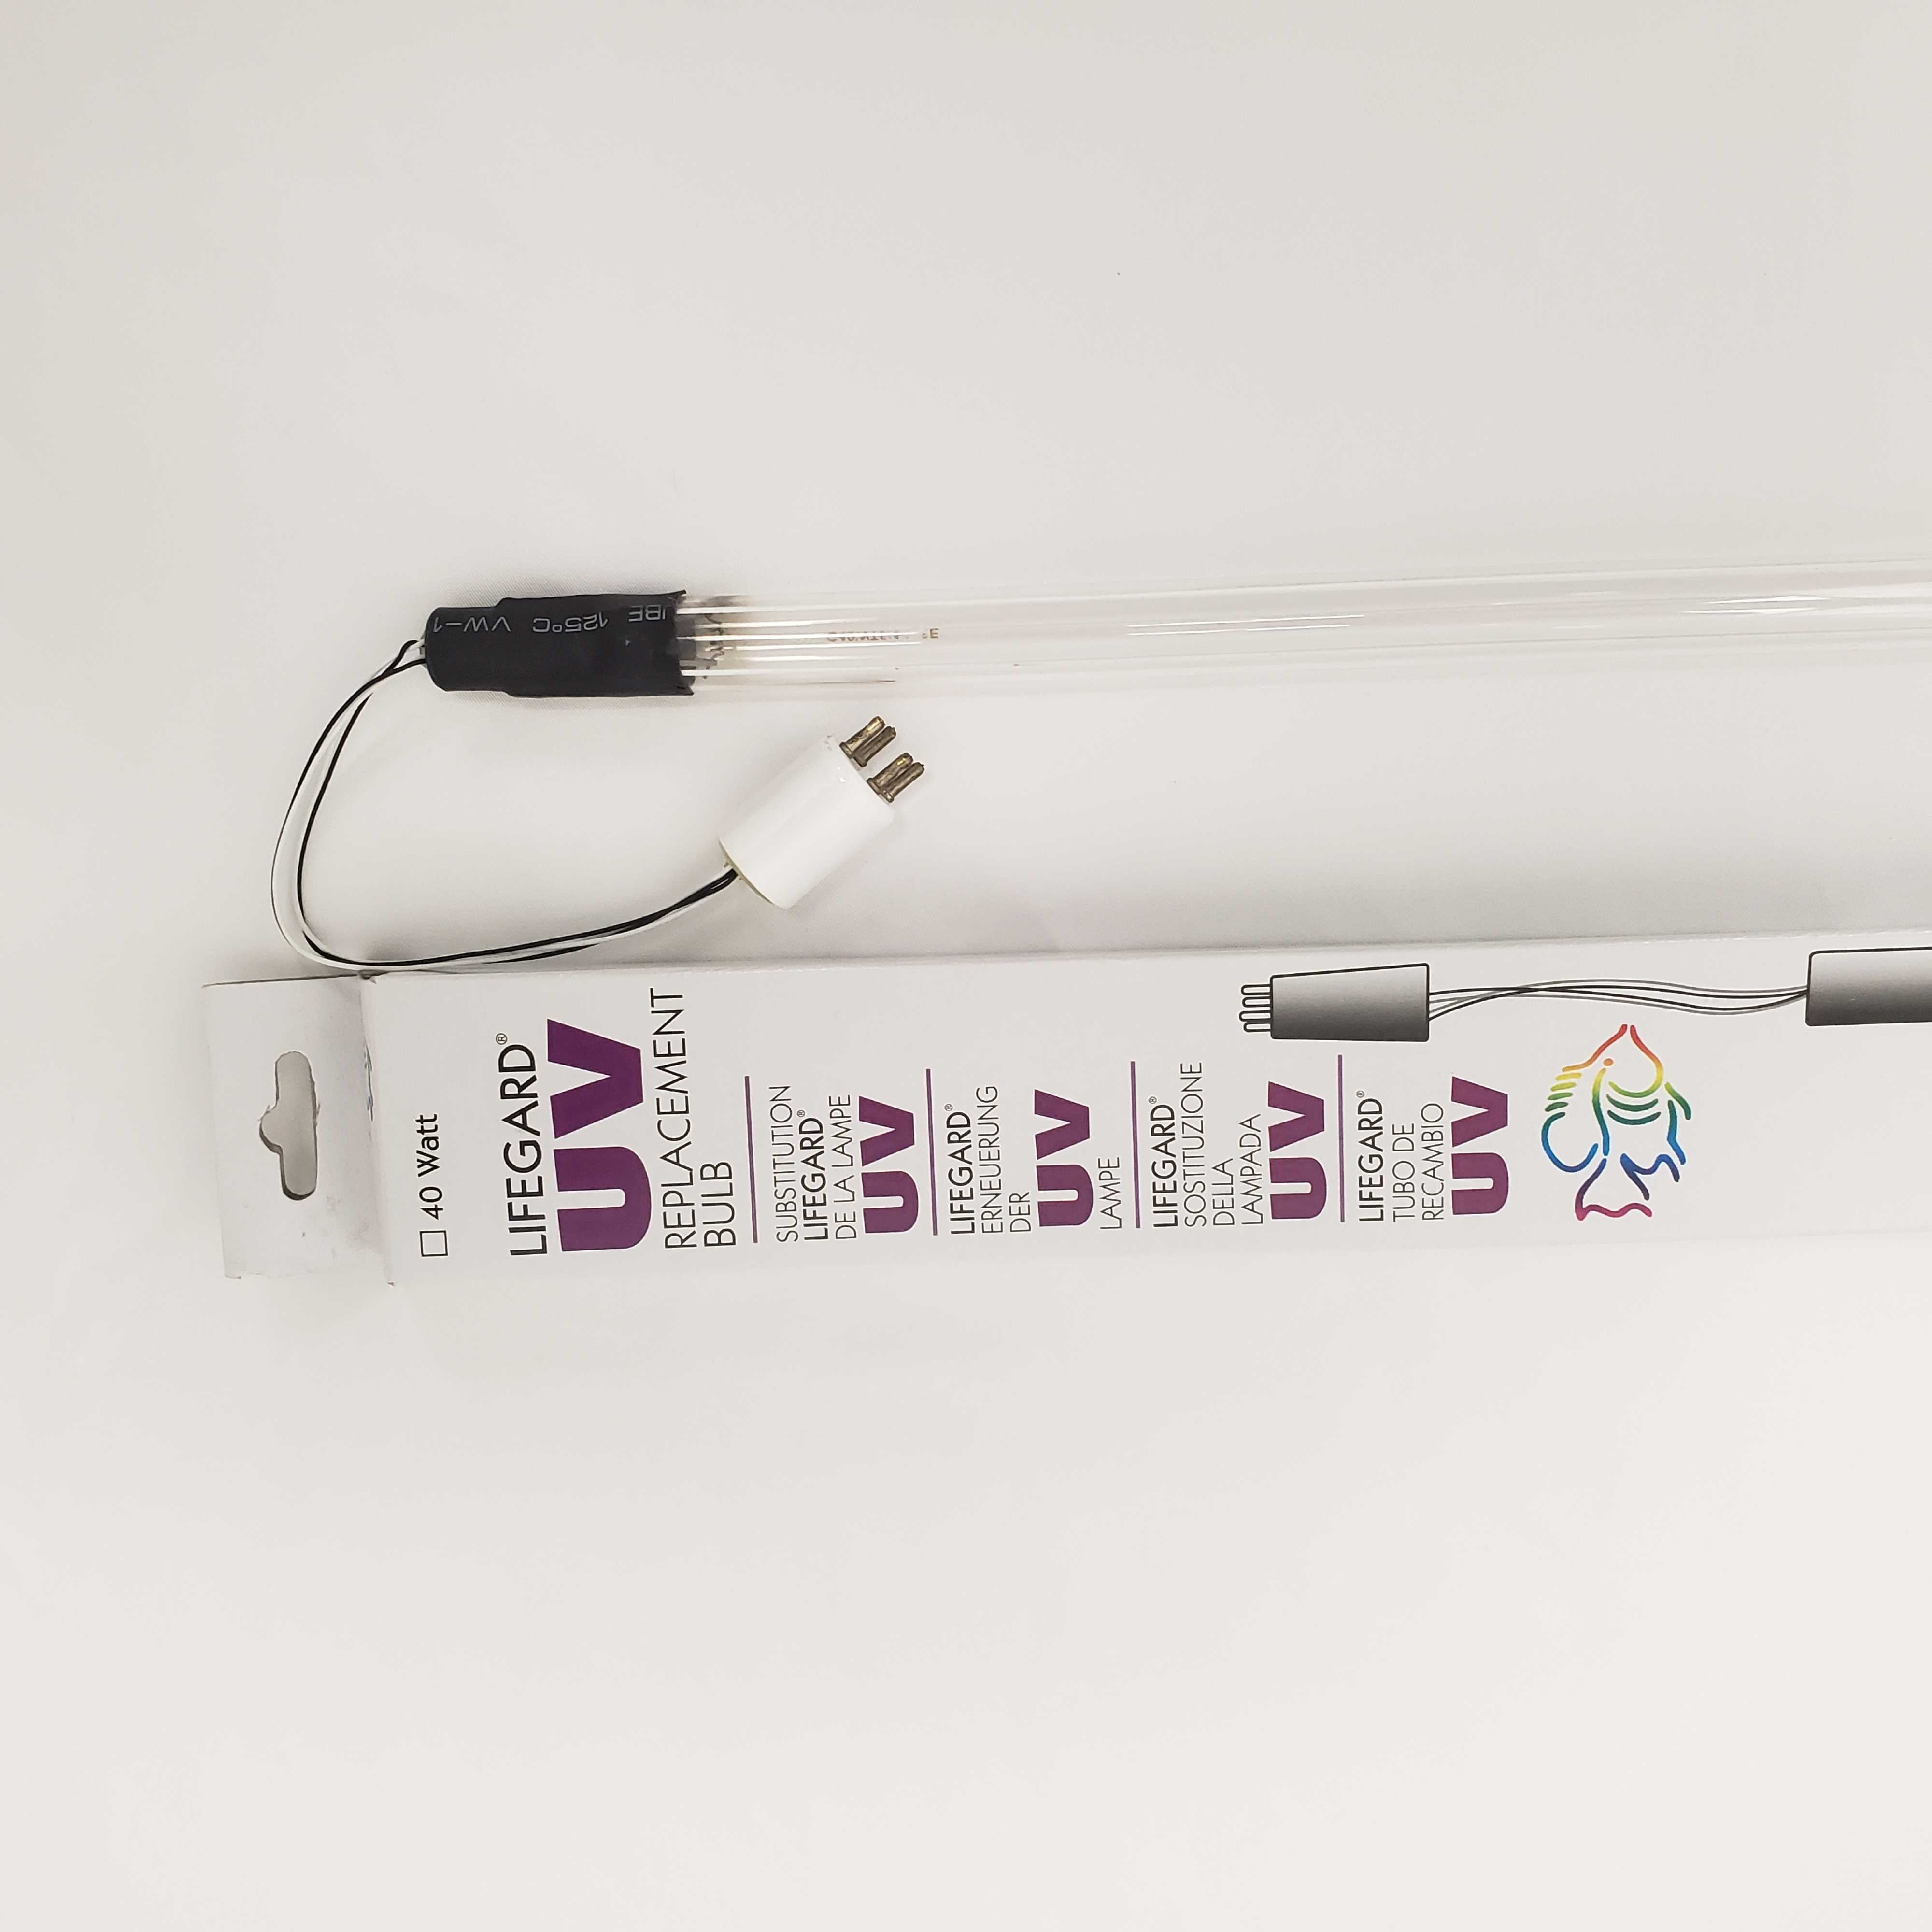 Lampe UV Aquarium Systems 5 Watts pour filtre UV d'aquarium